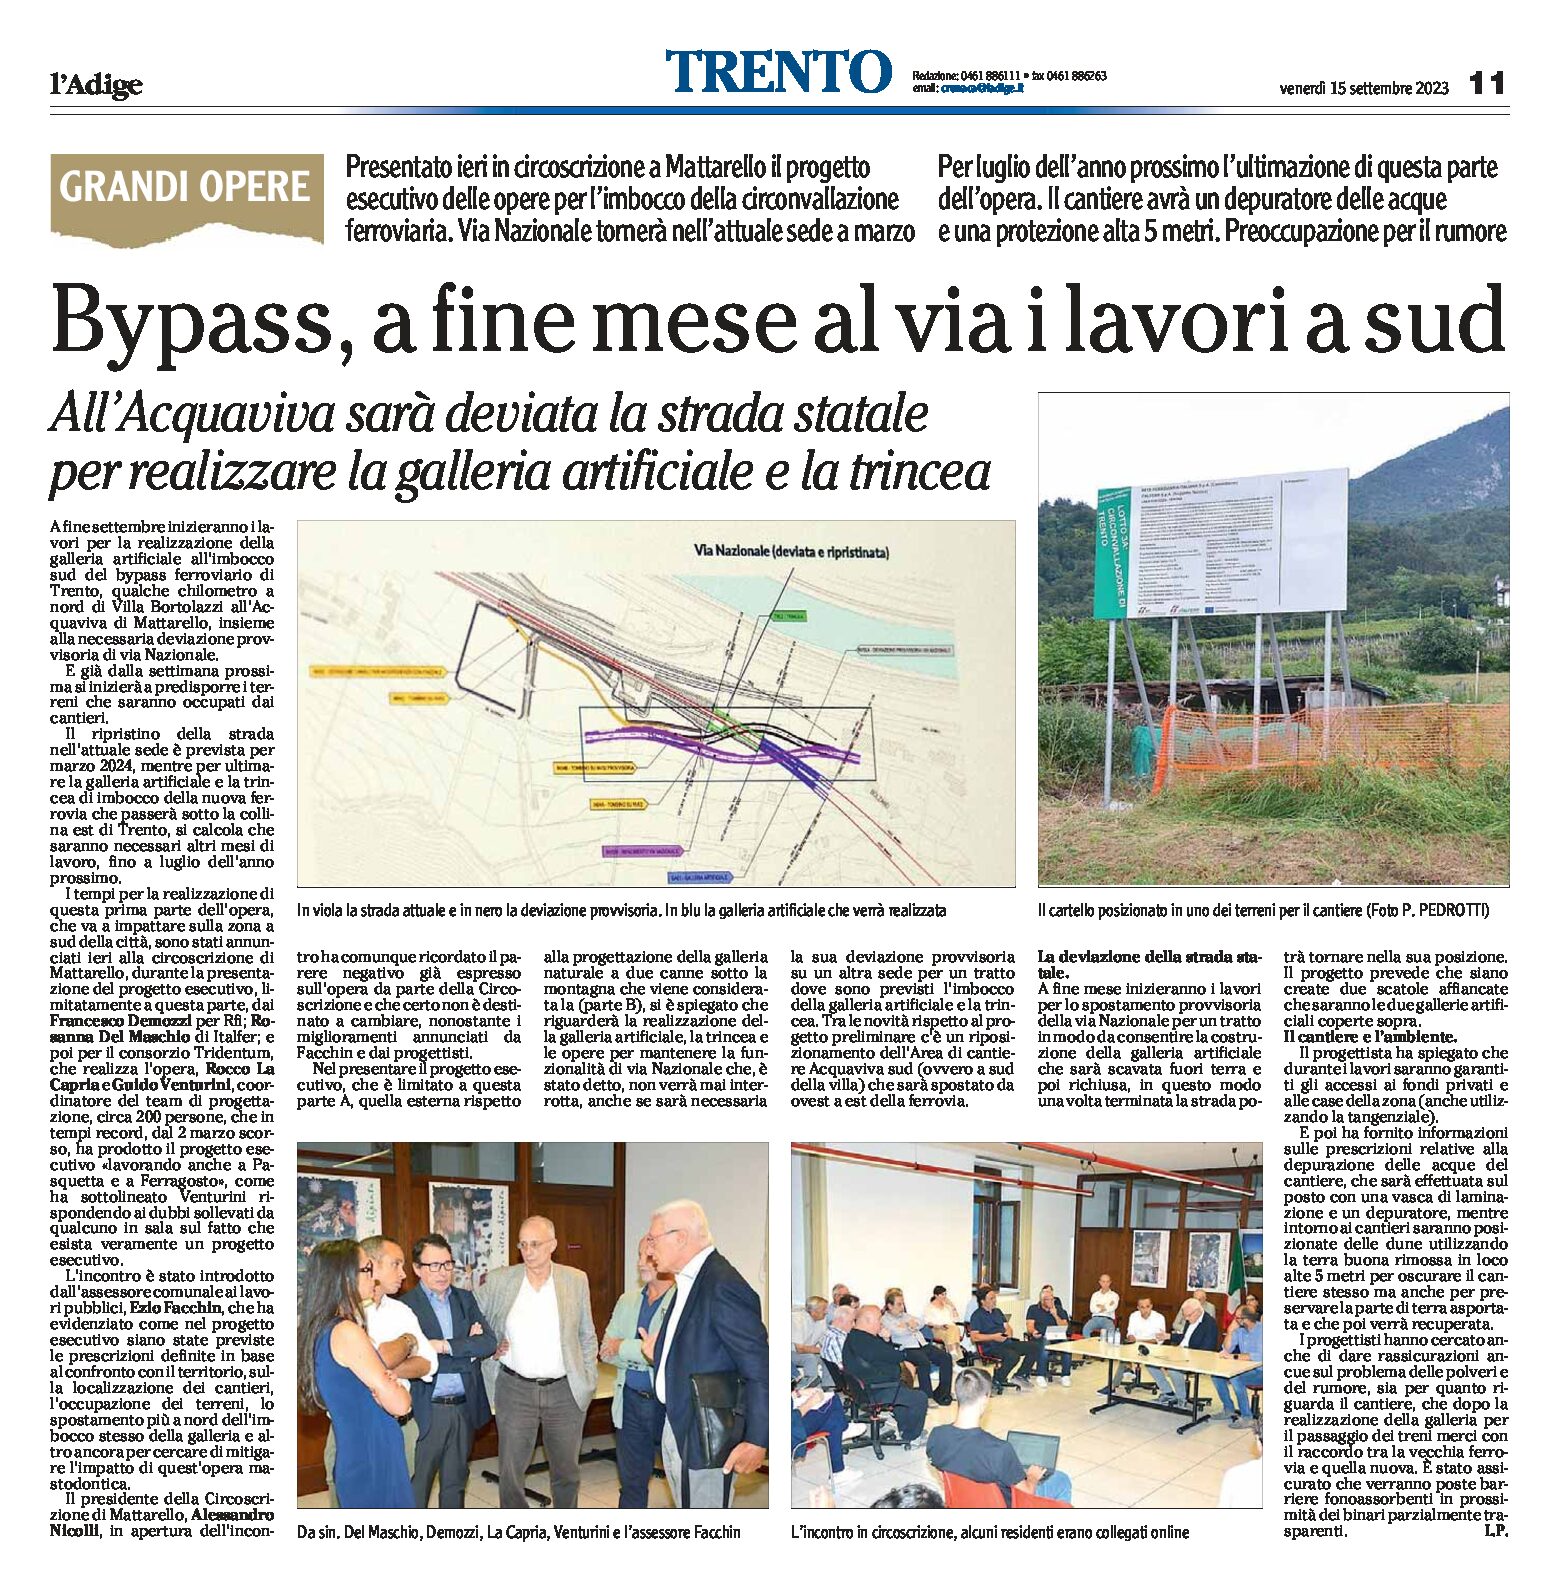 Trento, bypass: a fine mese, al via i lavori a sud. All’Acquaviva sarà deviata la strada statale